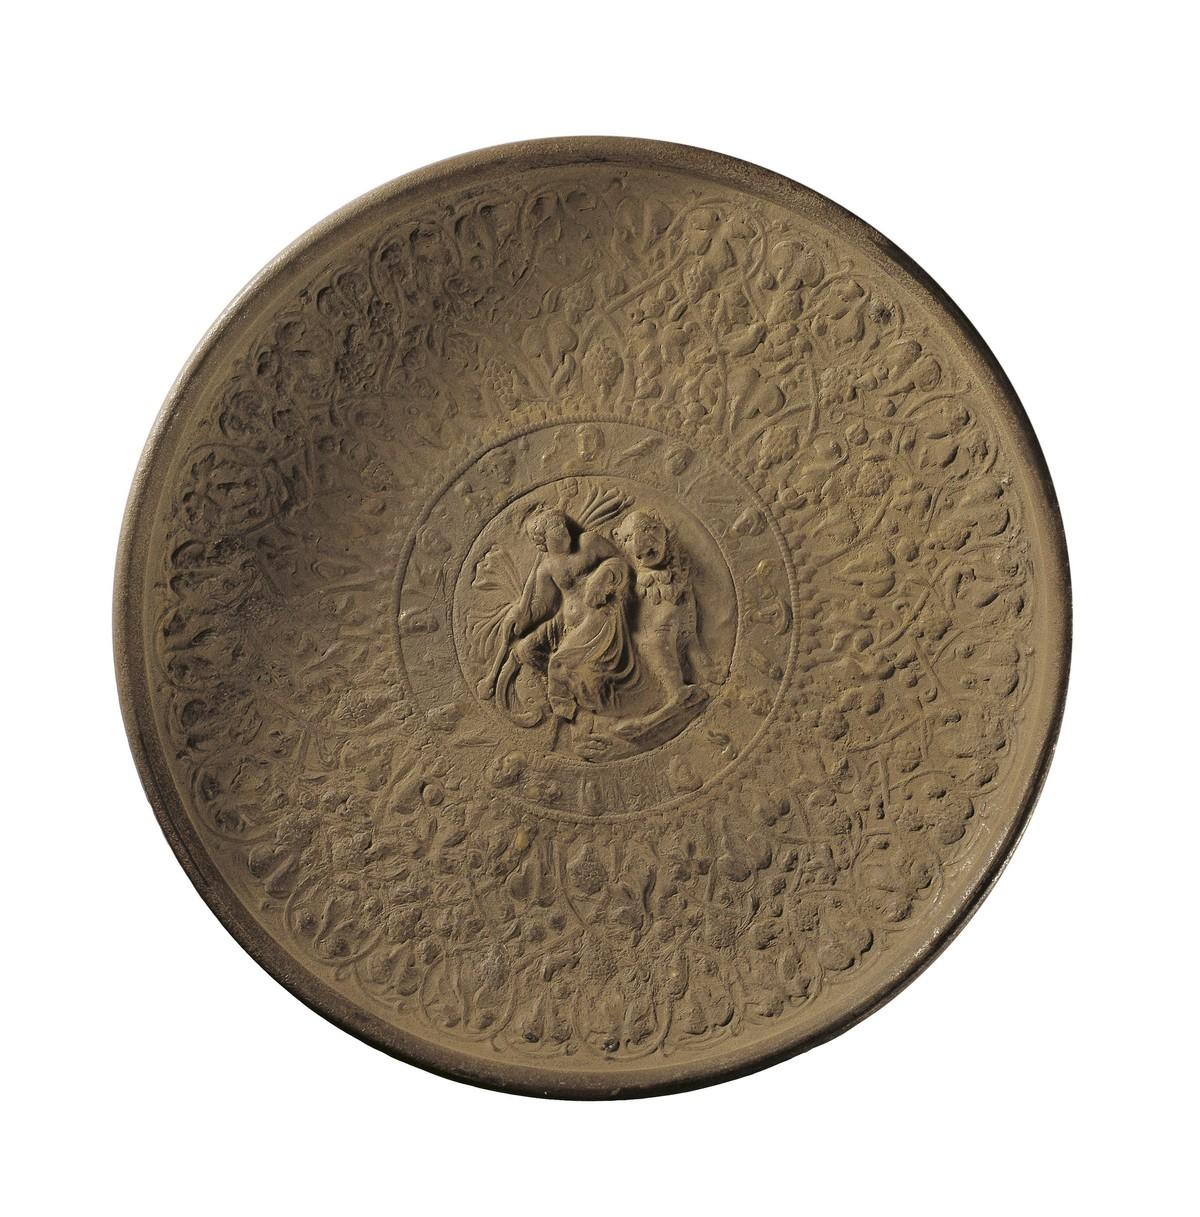 Plat romain en argent recouvert d'or, découvert en Chine, IIᵉ-IIIᵉ siècle après J.-C. (musée provincial de Gansu).